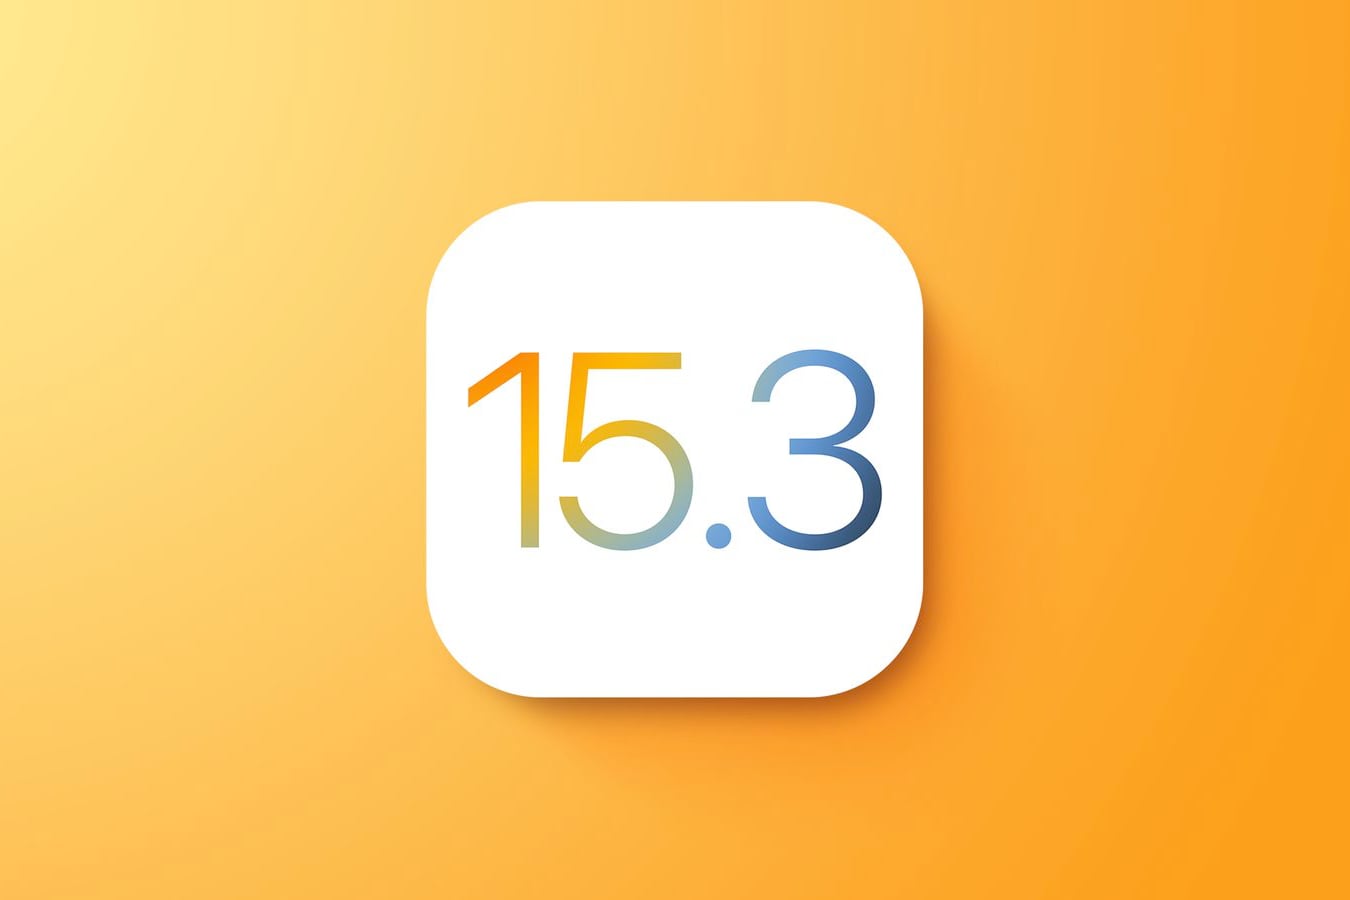 Apple перестала подписывать iOS 15.3. Откатиться больше нельзя